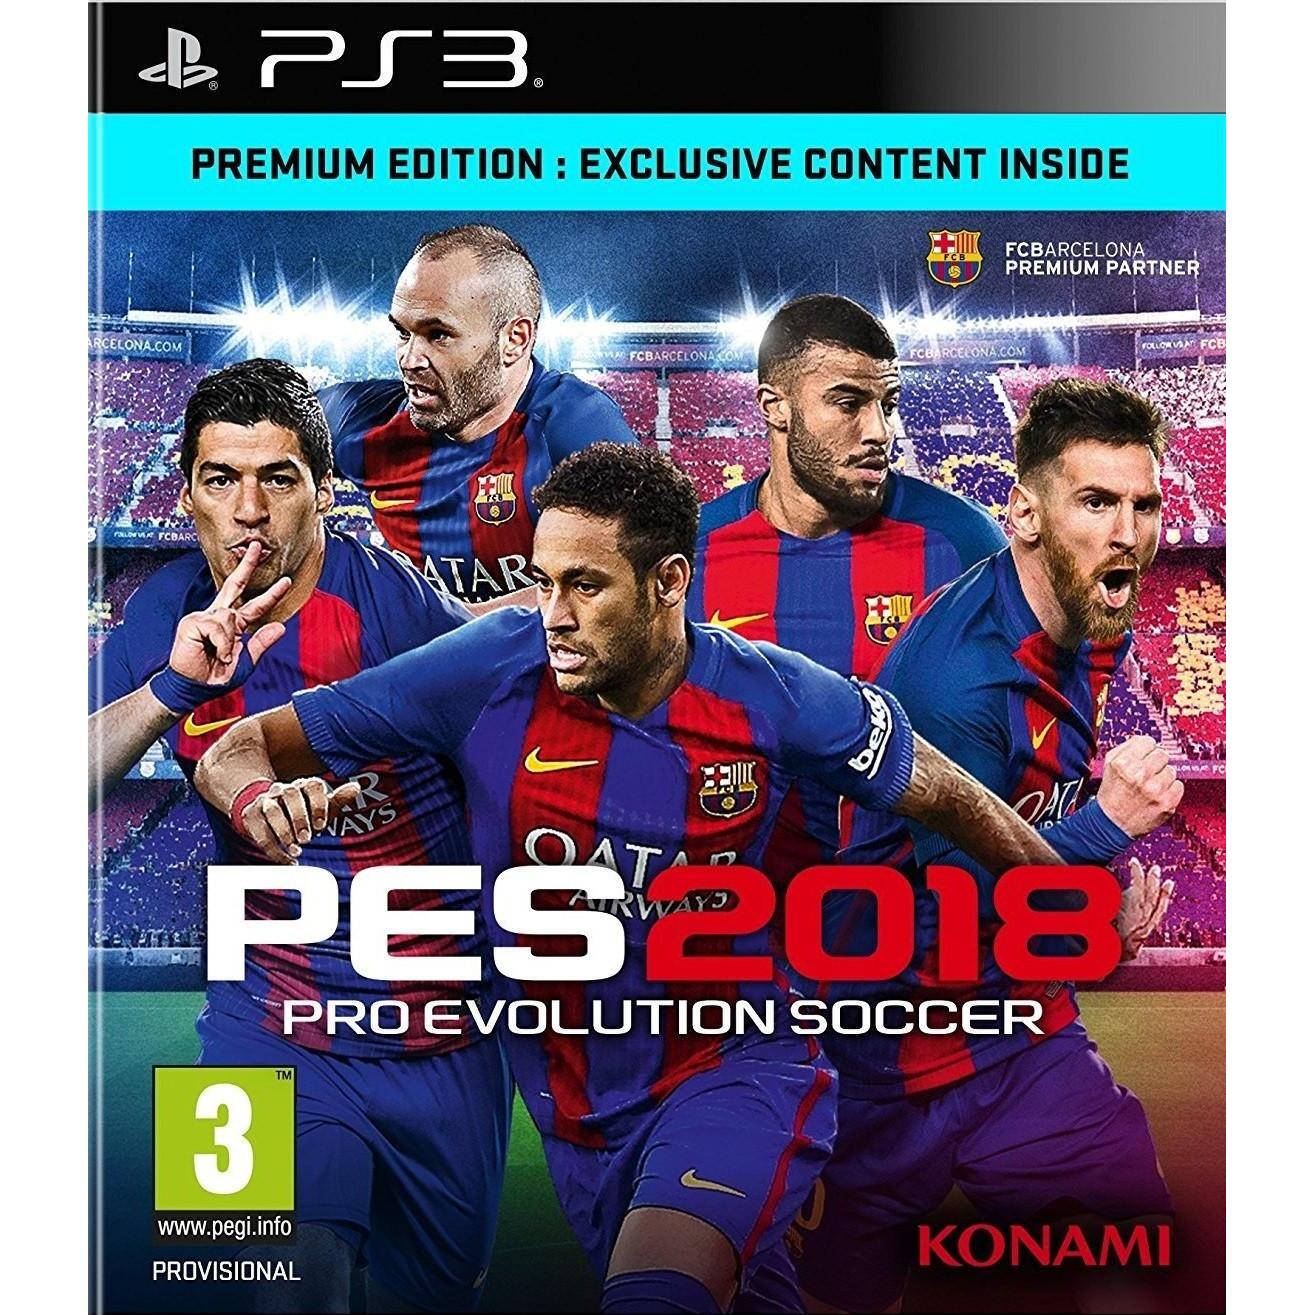 huurder Toeval Duplicatie Pro Evolution Soccer 2018 (PS3) kopen - €55